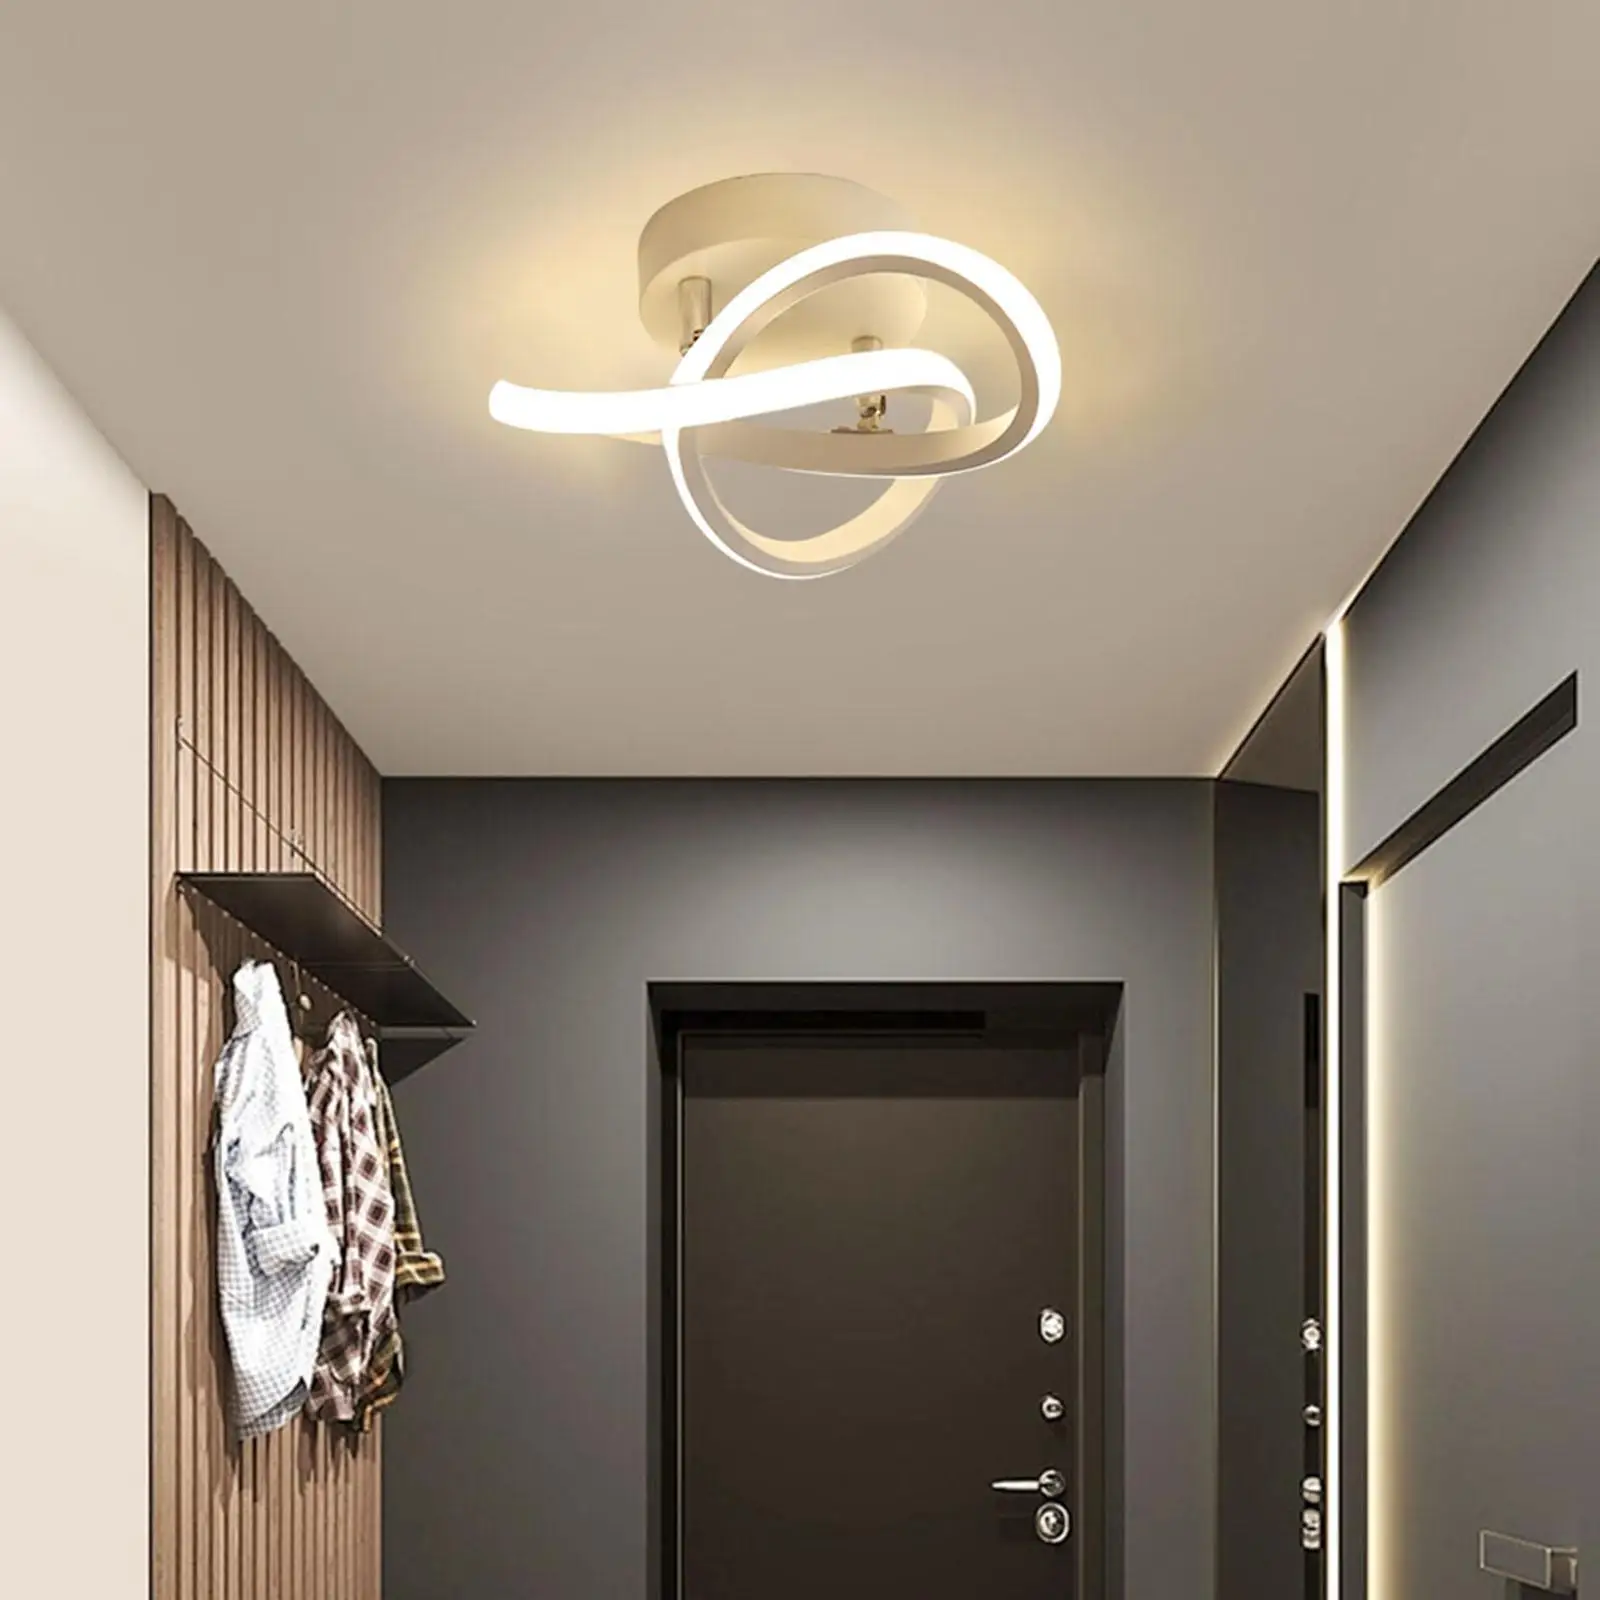 LED Ceiling Light Flush Mounted 18W, 110V for Bedroom Living Room Aisle